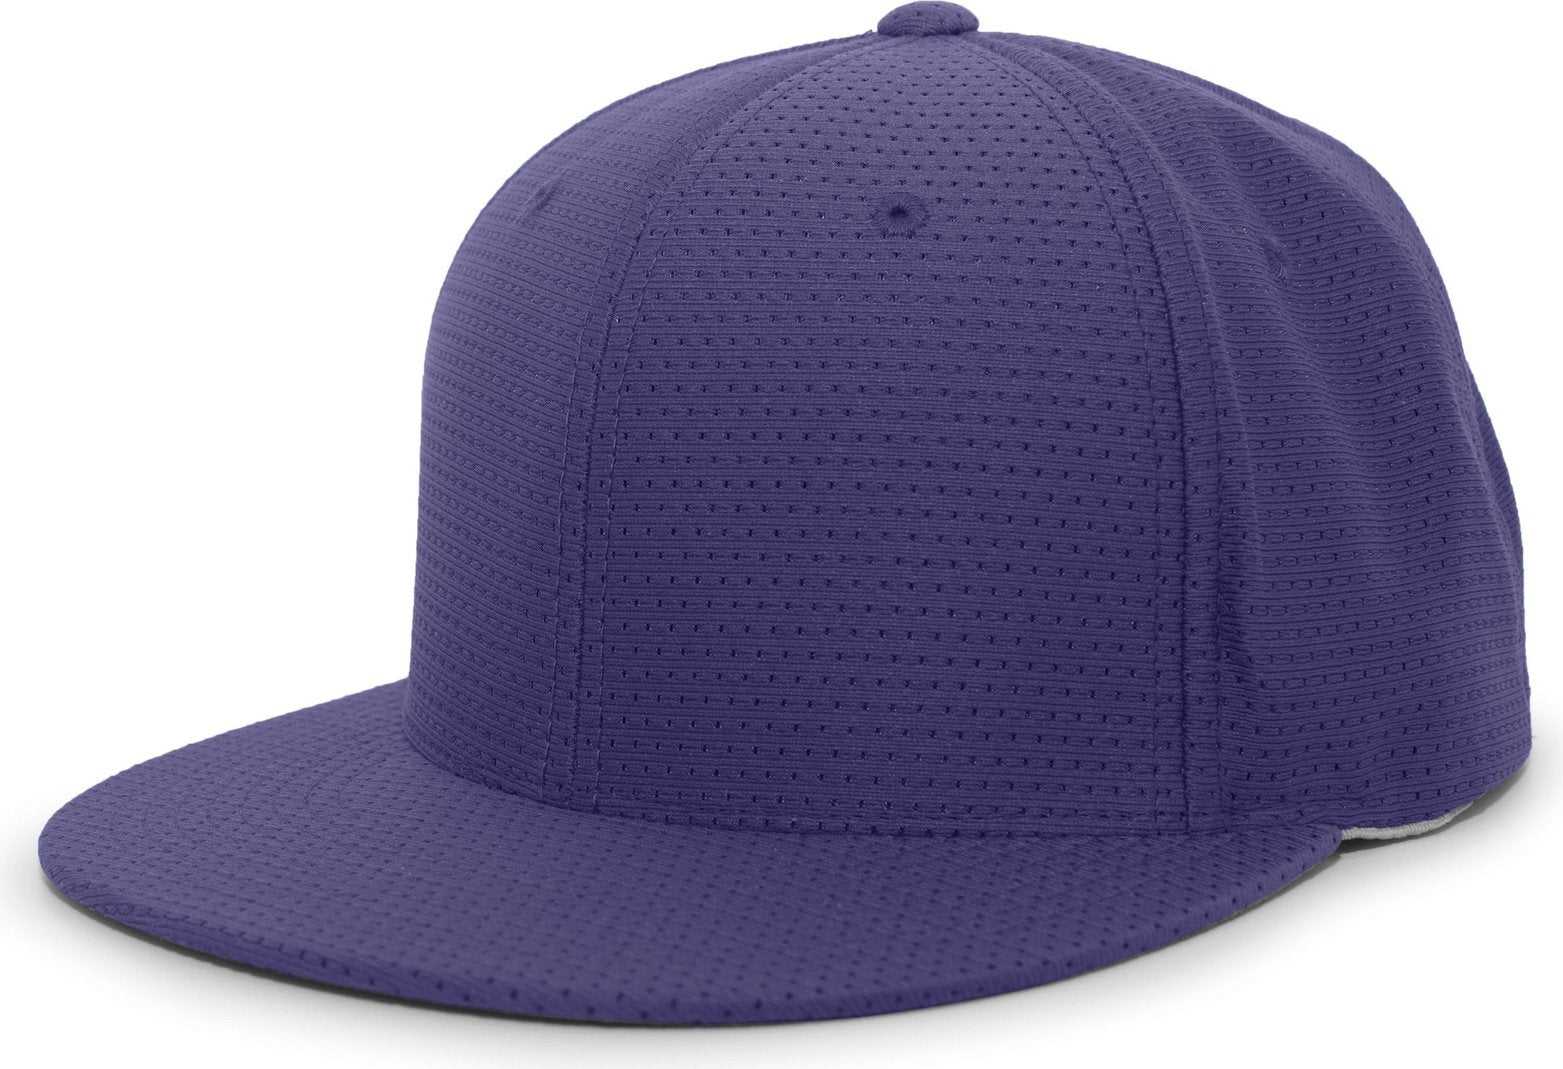 Pacific Headwear ES818 Air Jersey Performance Flexfit Cap - Purple - HIT a Double